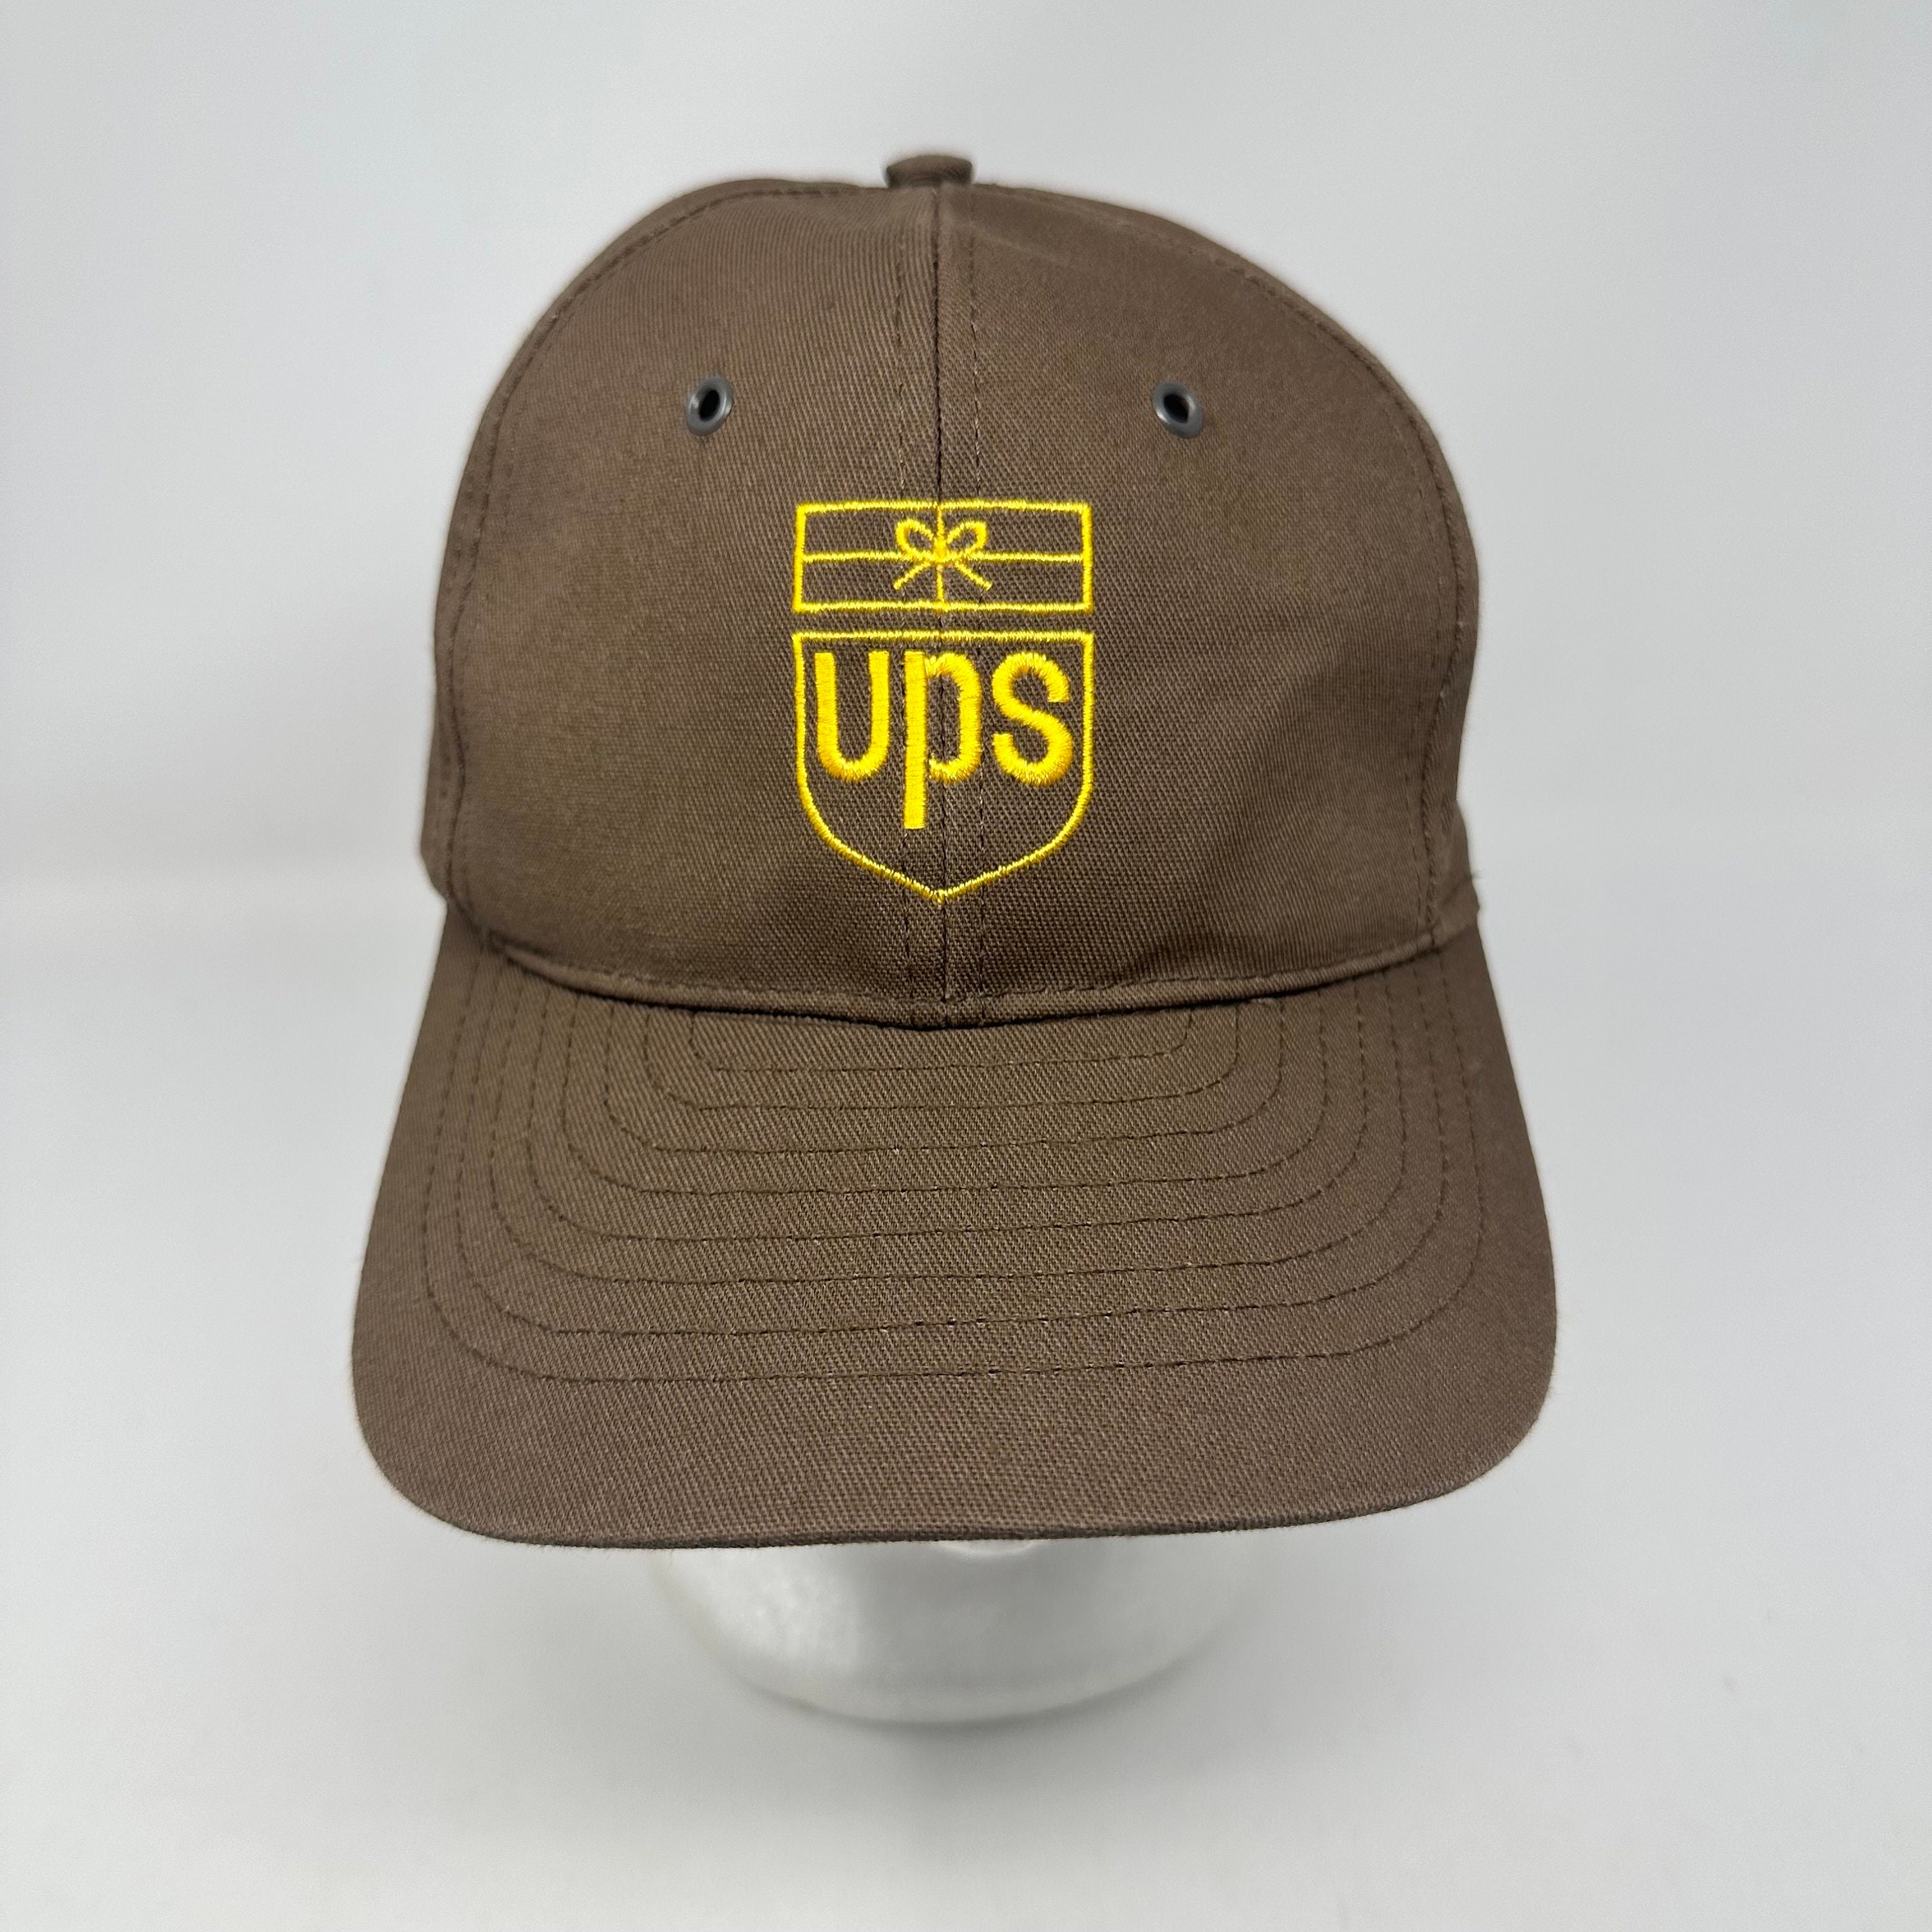 Vintage Vintage USPS Mailman “Dallas Mavericks” hat 90